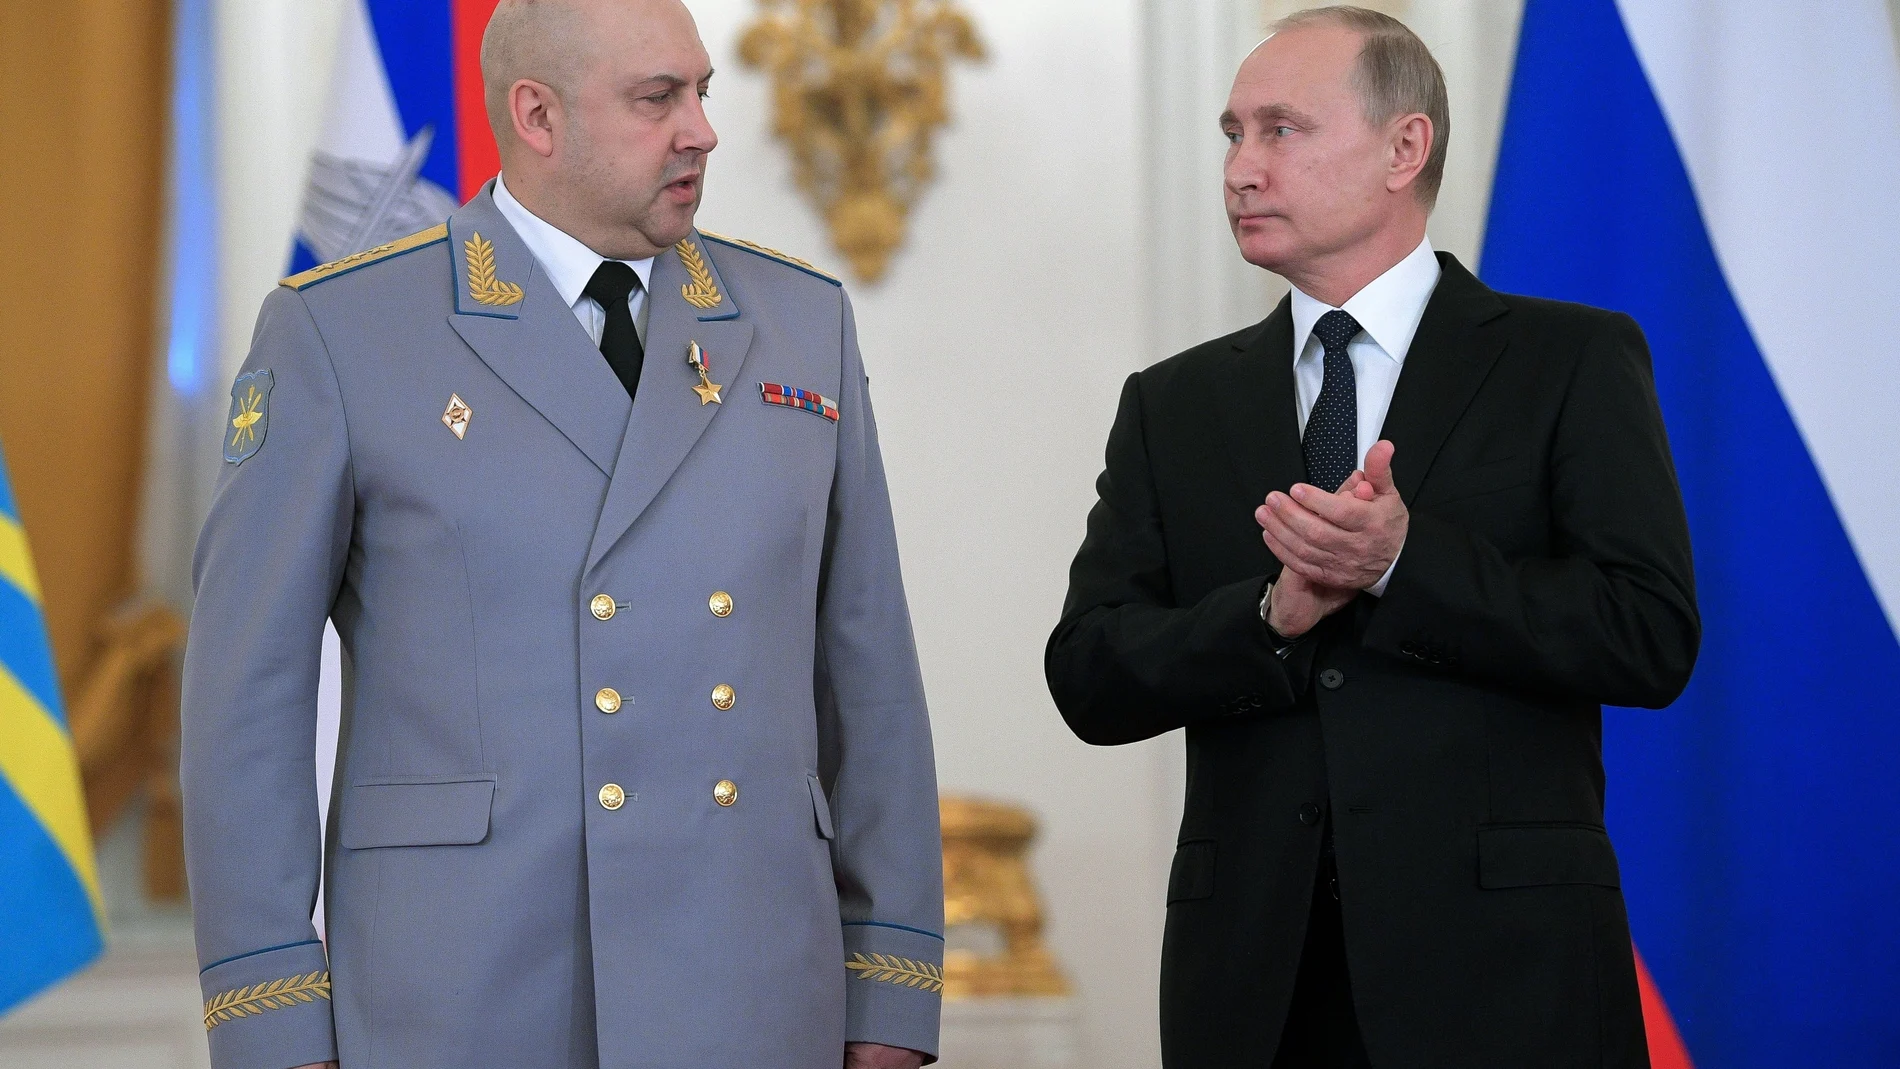 El presidente ruso Vladimir Putin, aplaude al Col. Gen. Sergei Surovikin durante una ceremonia de 2017 en la que se le condecoró por su papel en la guerra de Siria